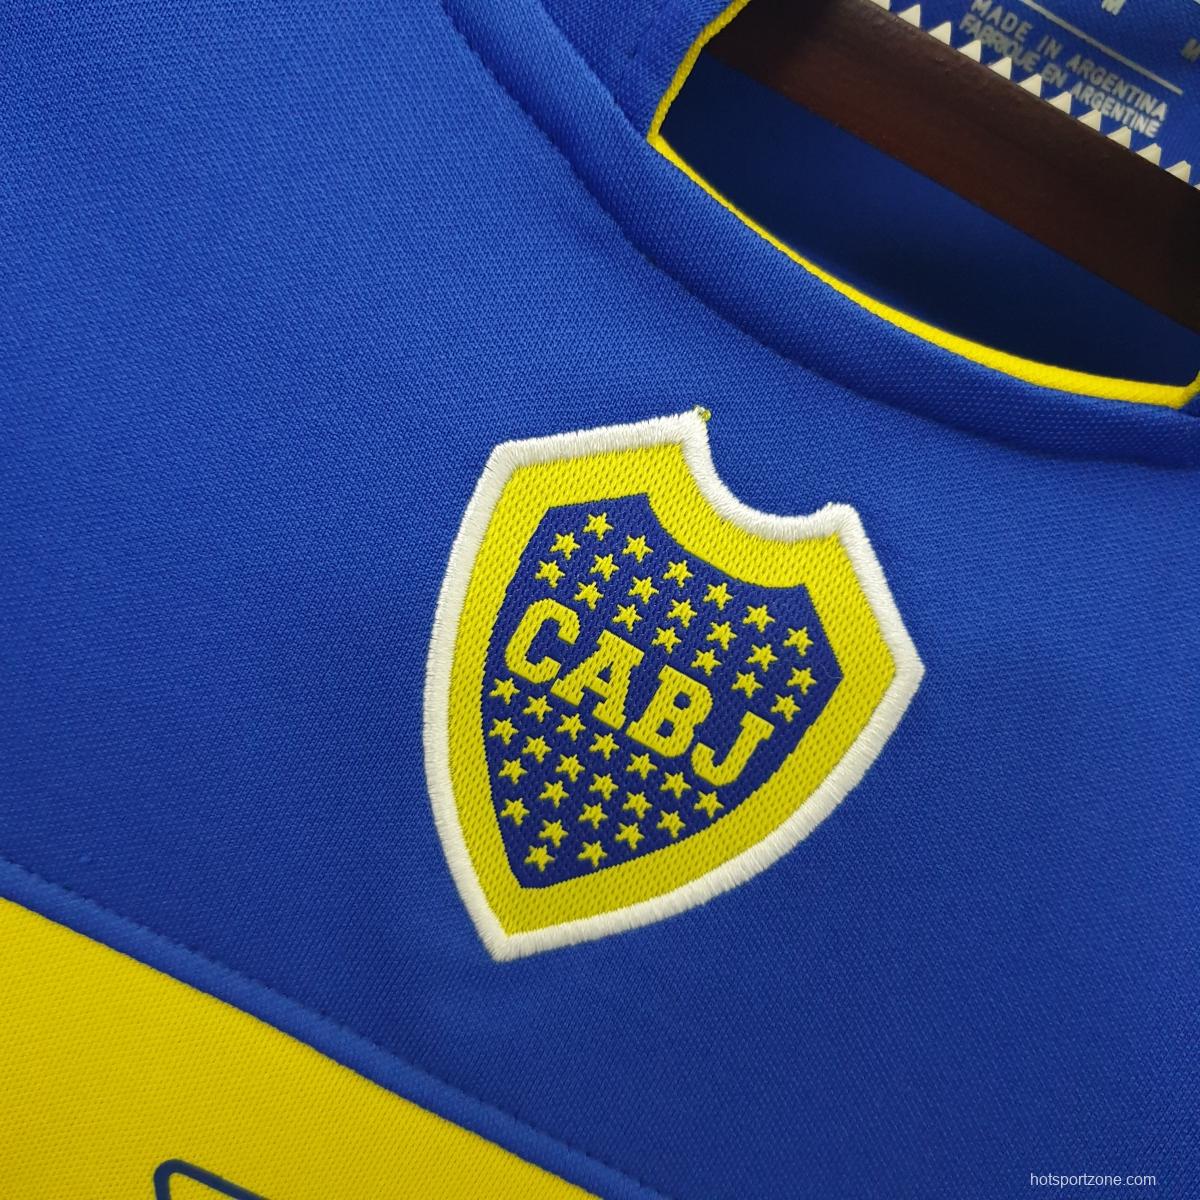 Retro shirt Boca Juniors 2005 home Soccer Jersey